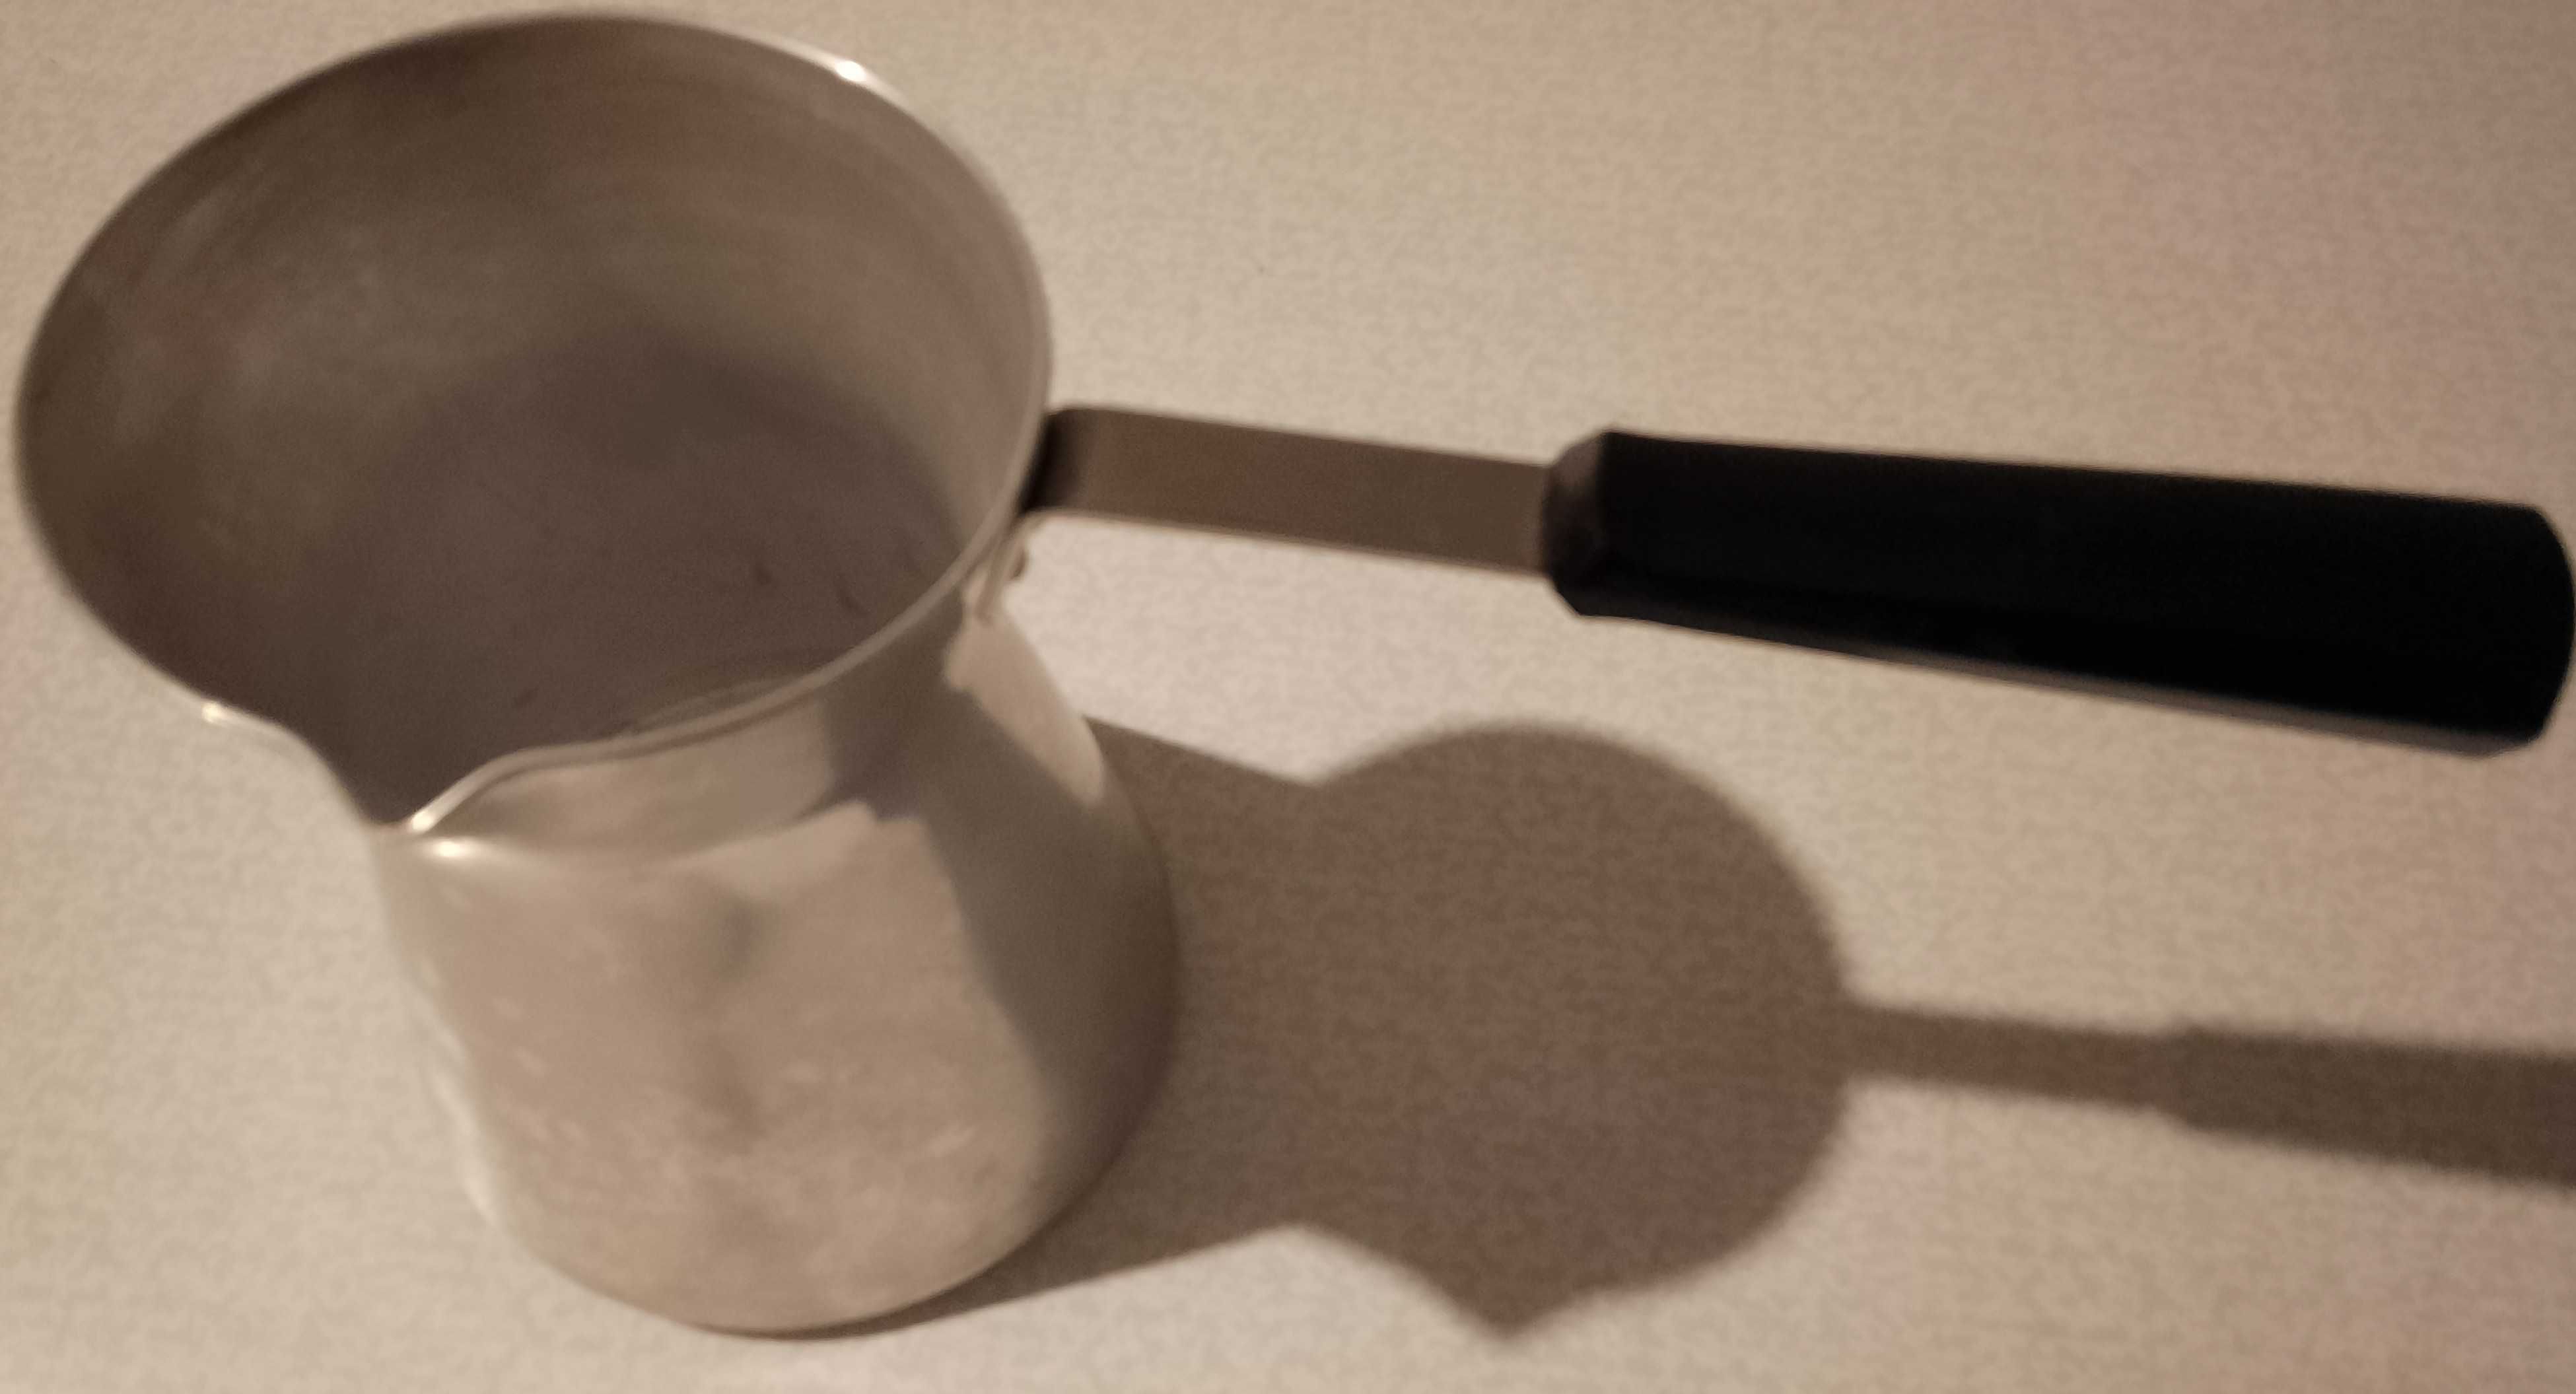 rosyjski mlecznik metalowy z plastikową rączką, pojemność 0,45 litra